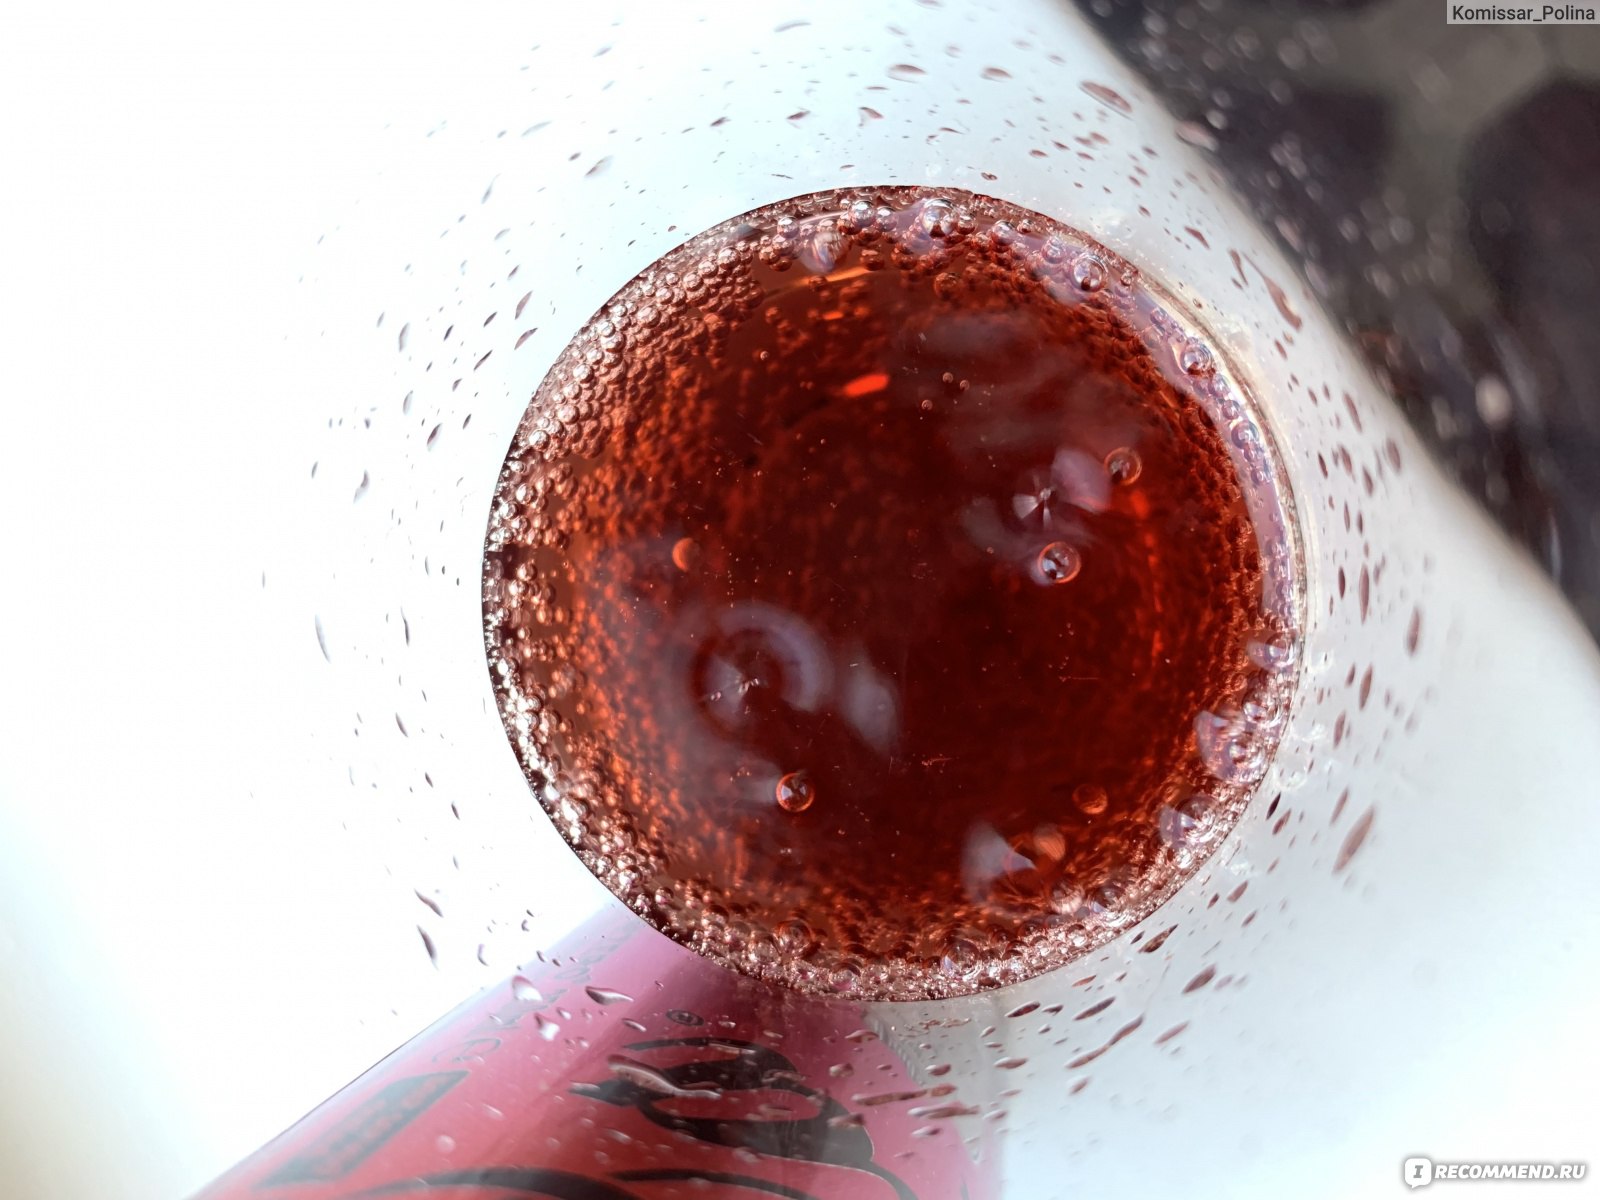 Напиток газированный Coca‑Cola Intergalactic фото